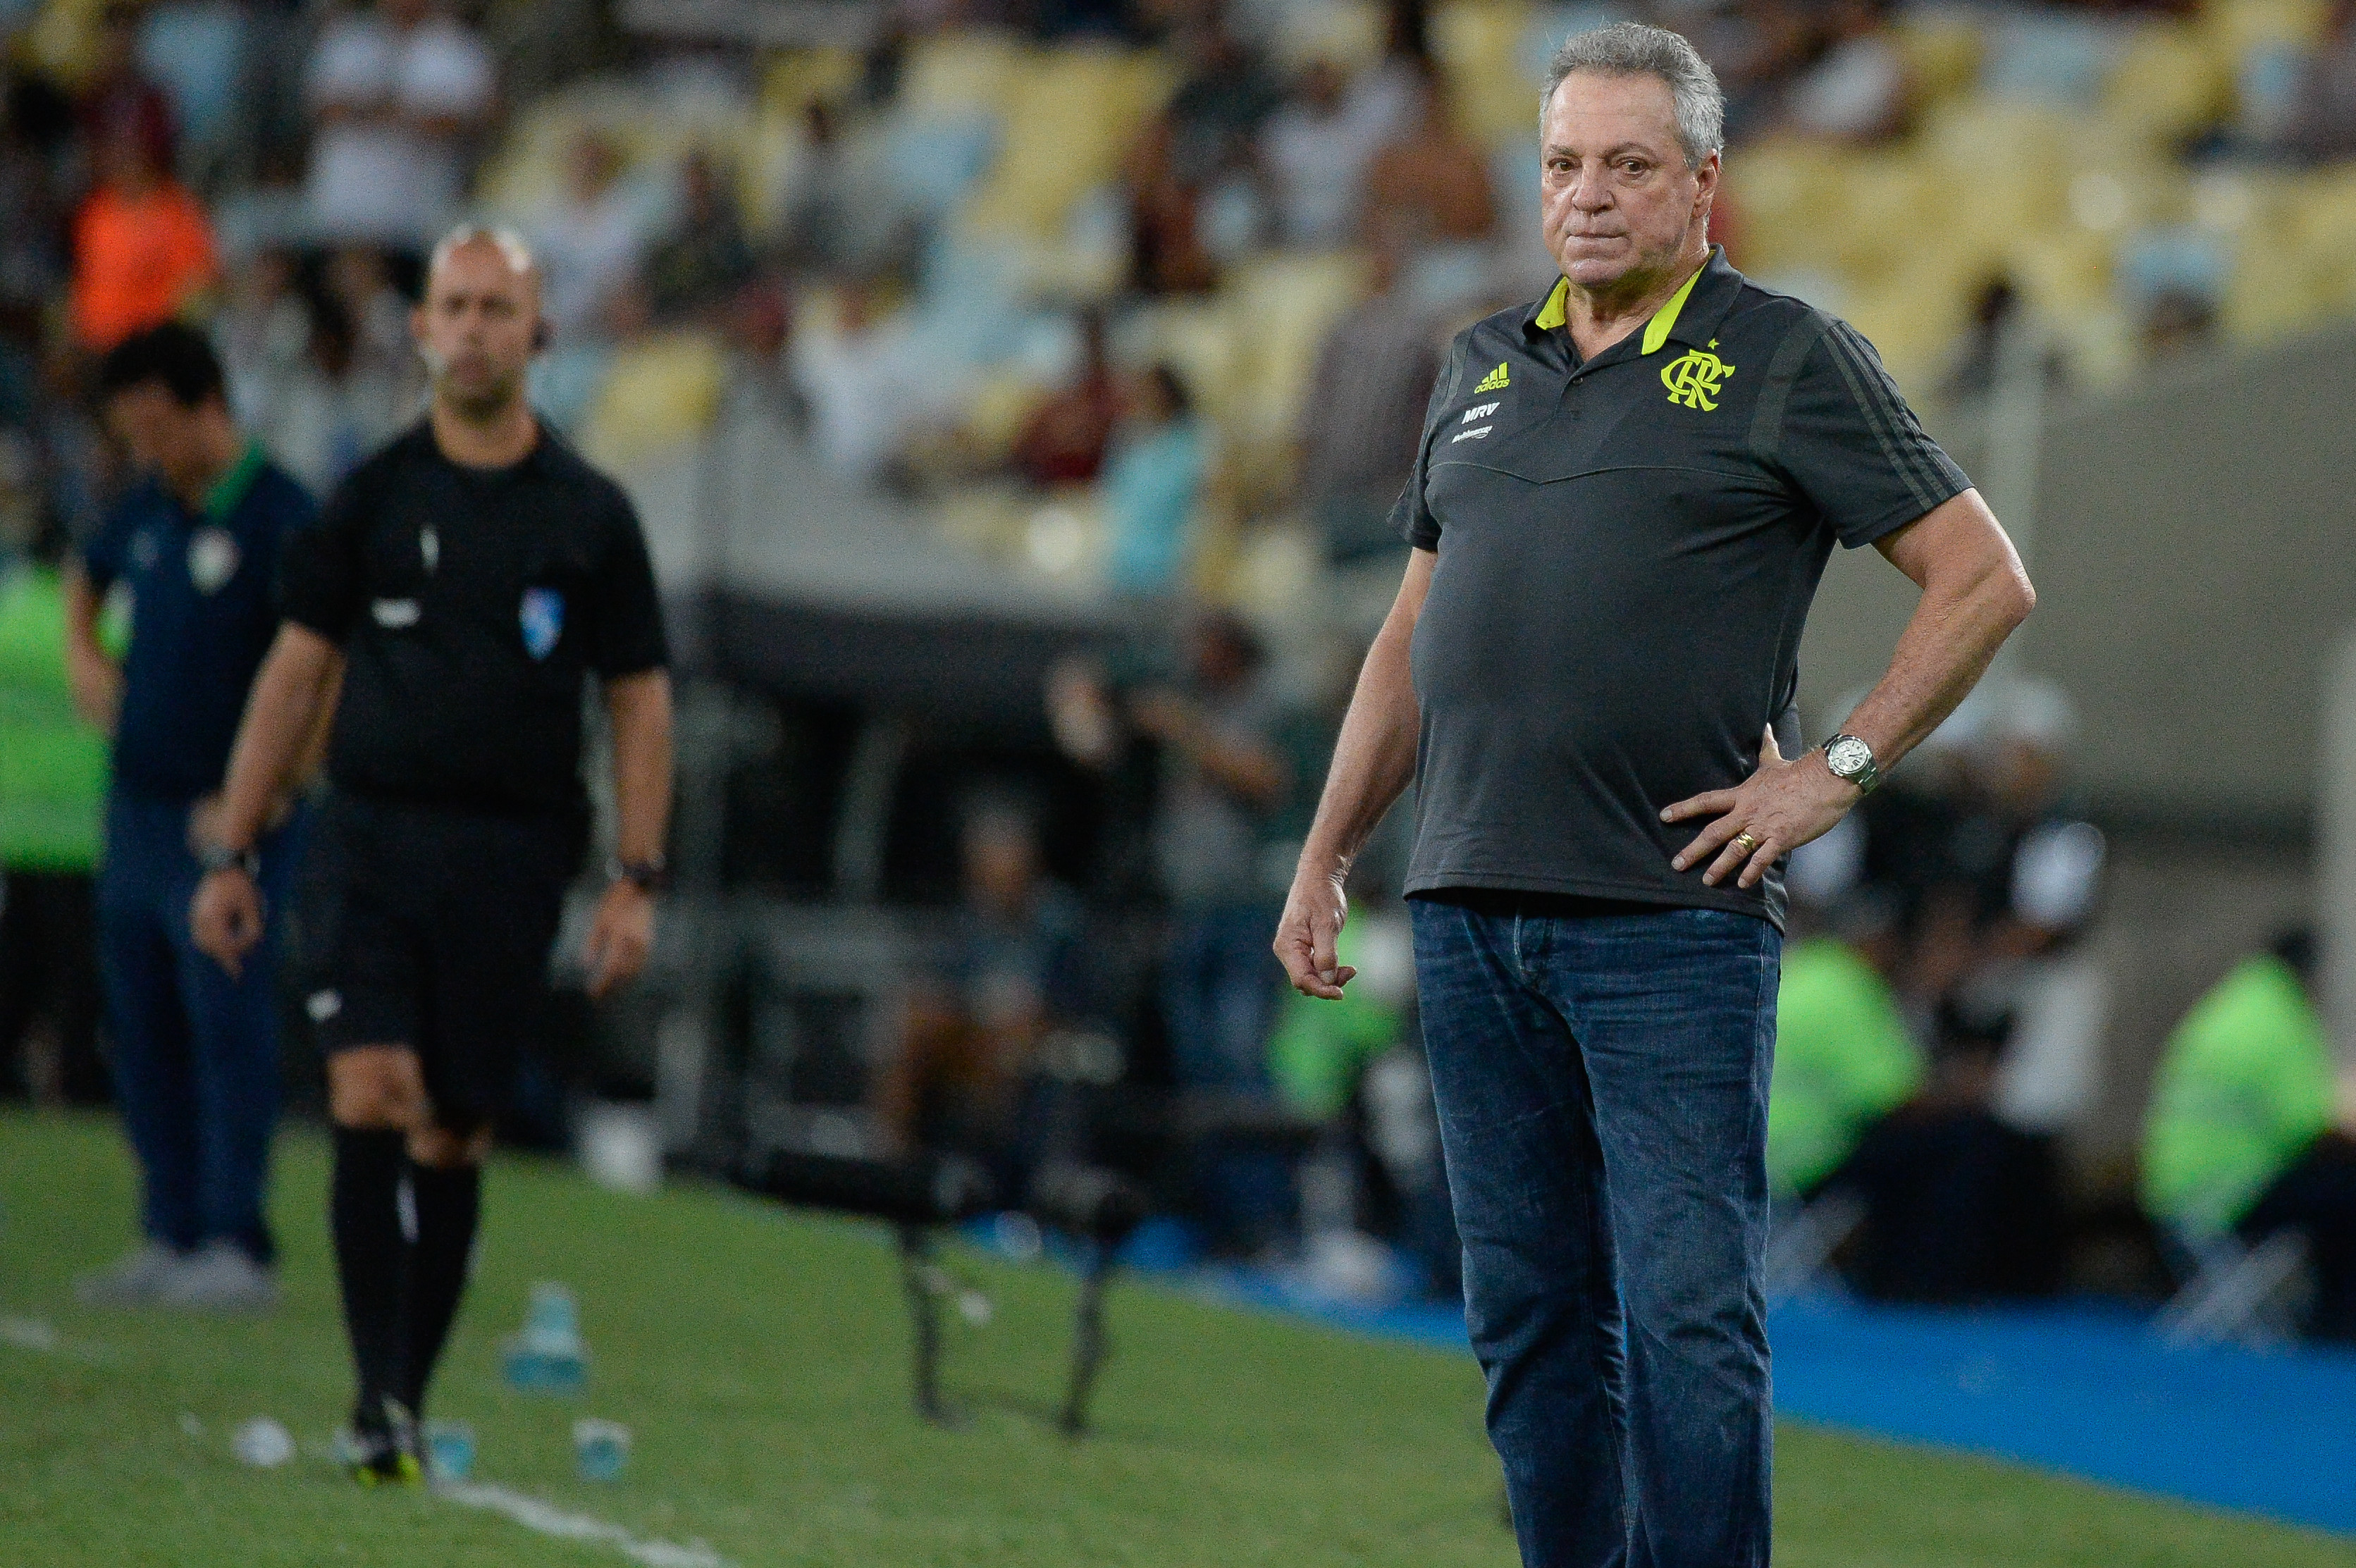 Tiago Nunes prega jogo a jogo para Botafogo recuperar confiança e ganhar o  Brasileirão 